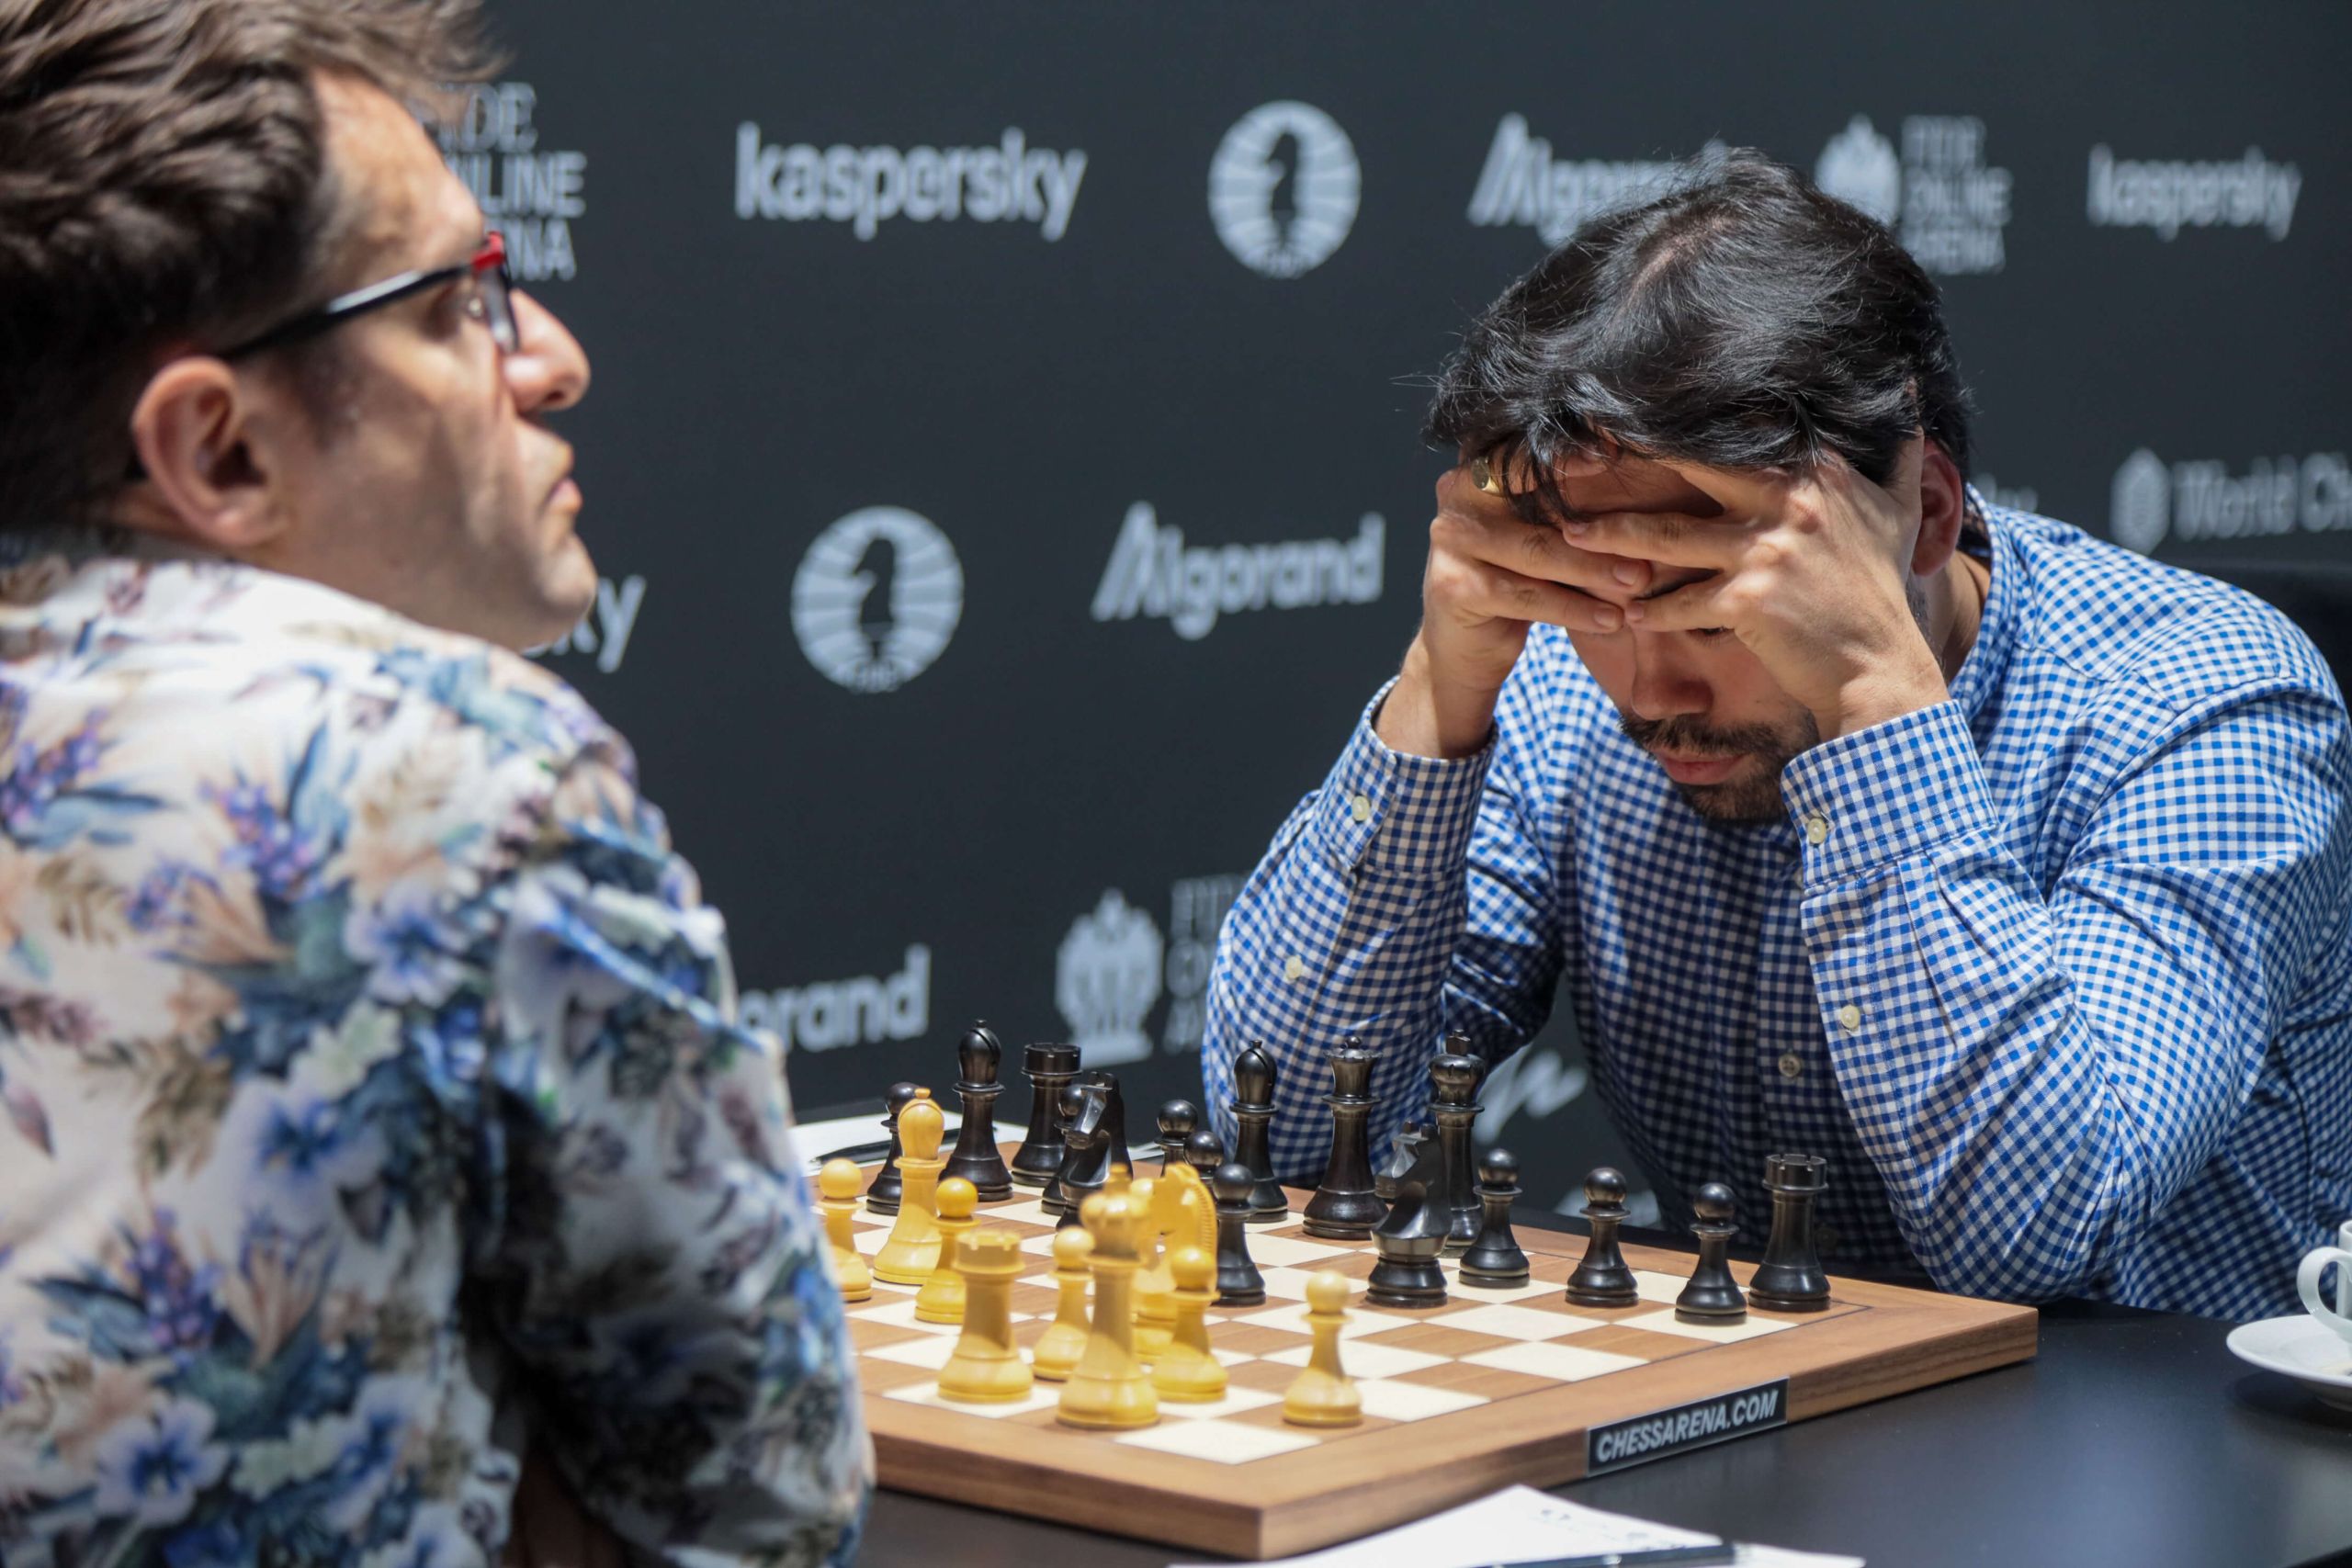 FIDE Grand Prix Berlin: Semifinals go to tiebreaks